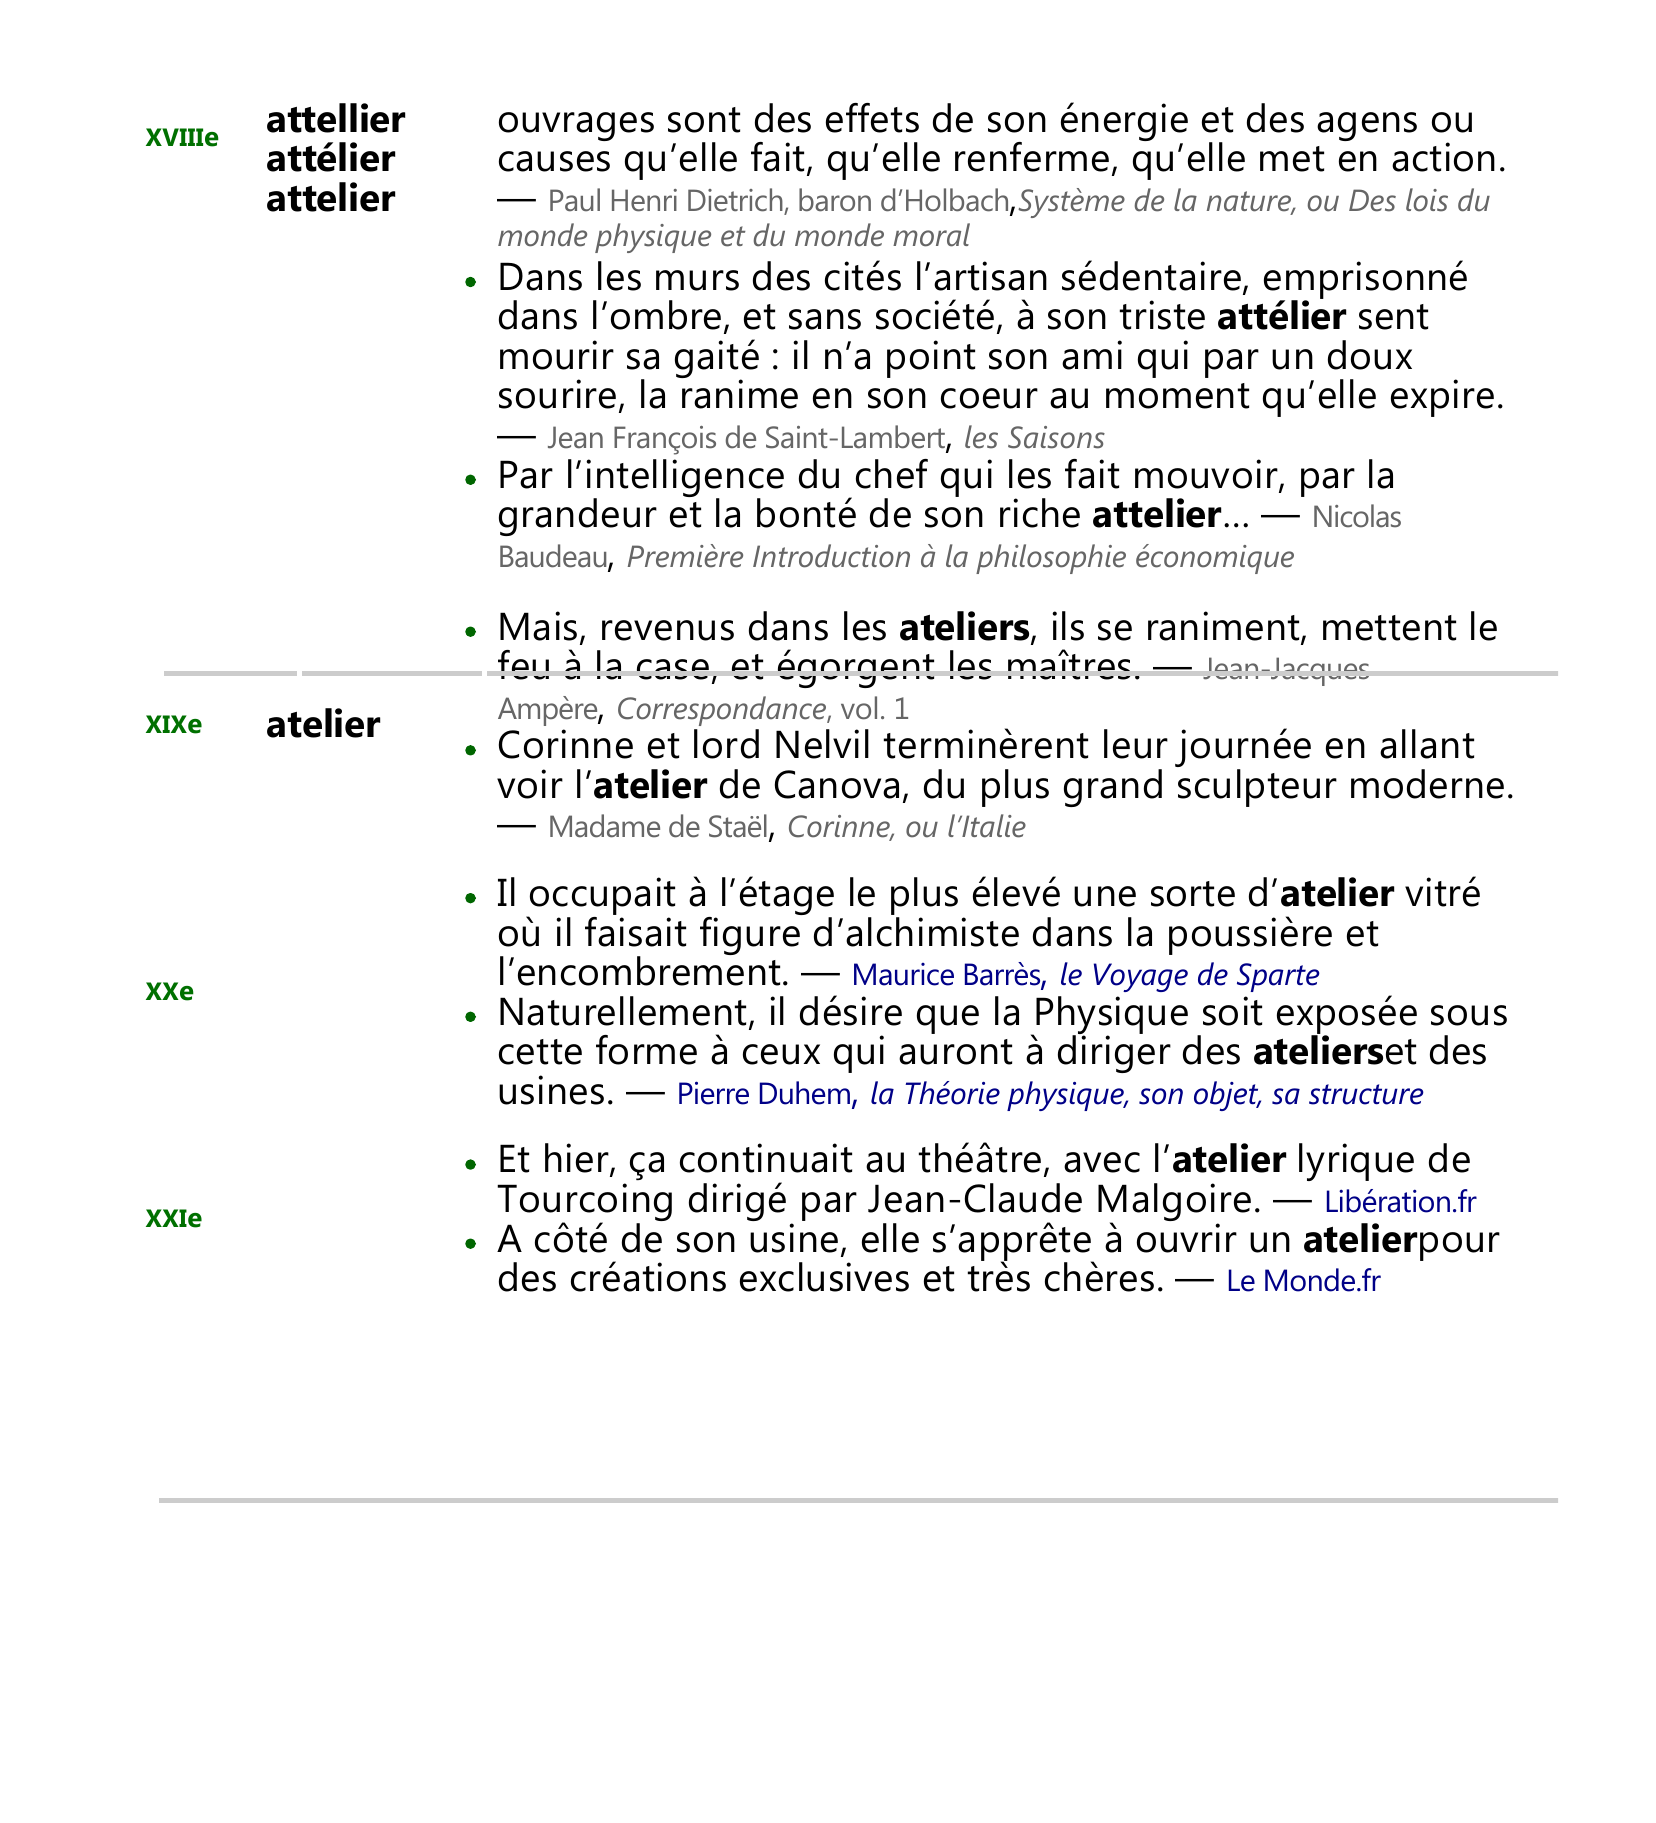 Prévisualisation du document Historique de atelier, nom masculin
Étymologie
De attelle et -ier ; du latin populaire astella, 'planchette'.